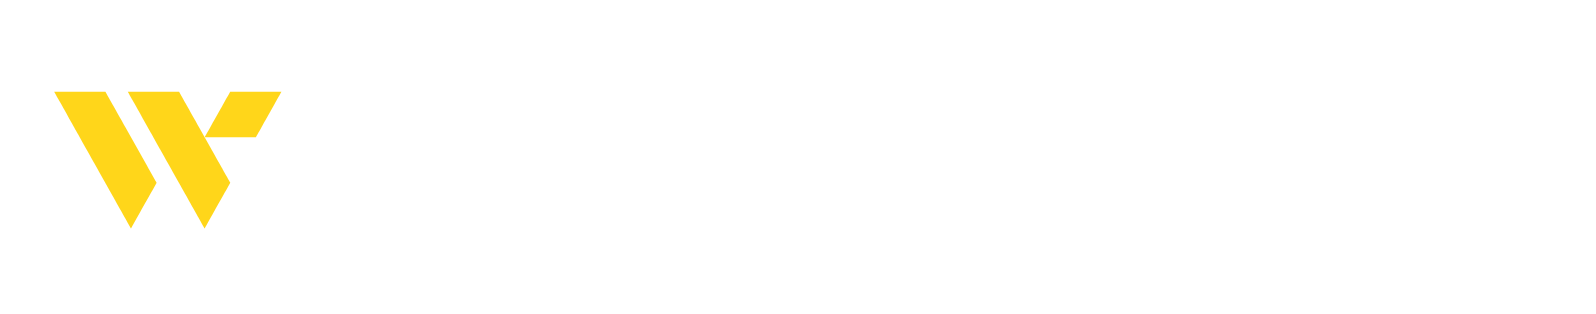 Webster Financial logo large for dark backgrounds (transparent PNG)